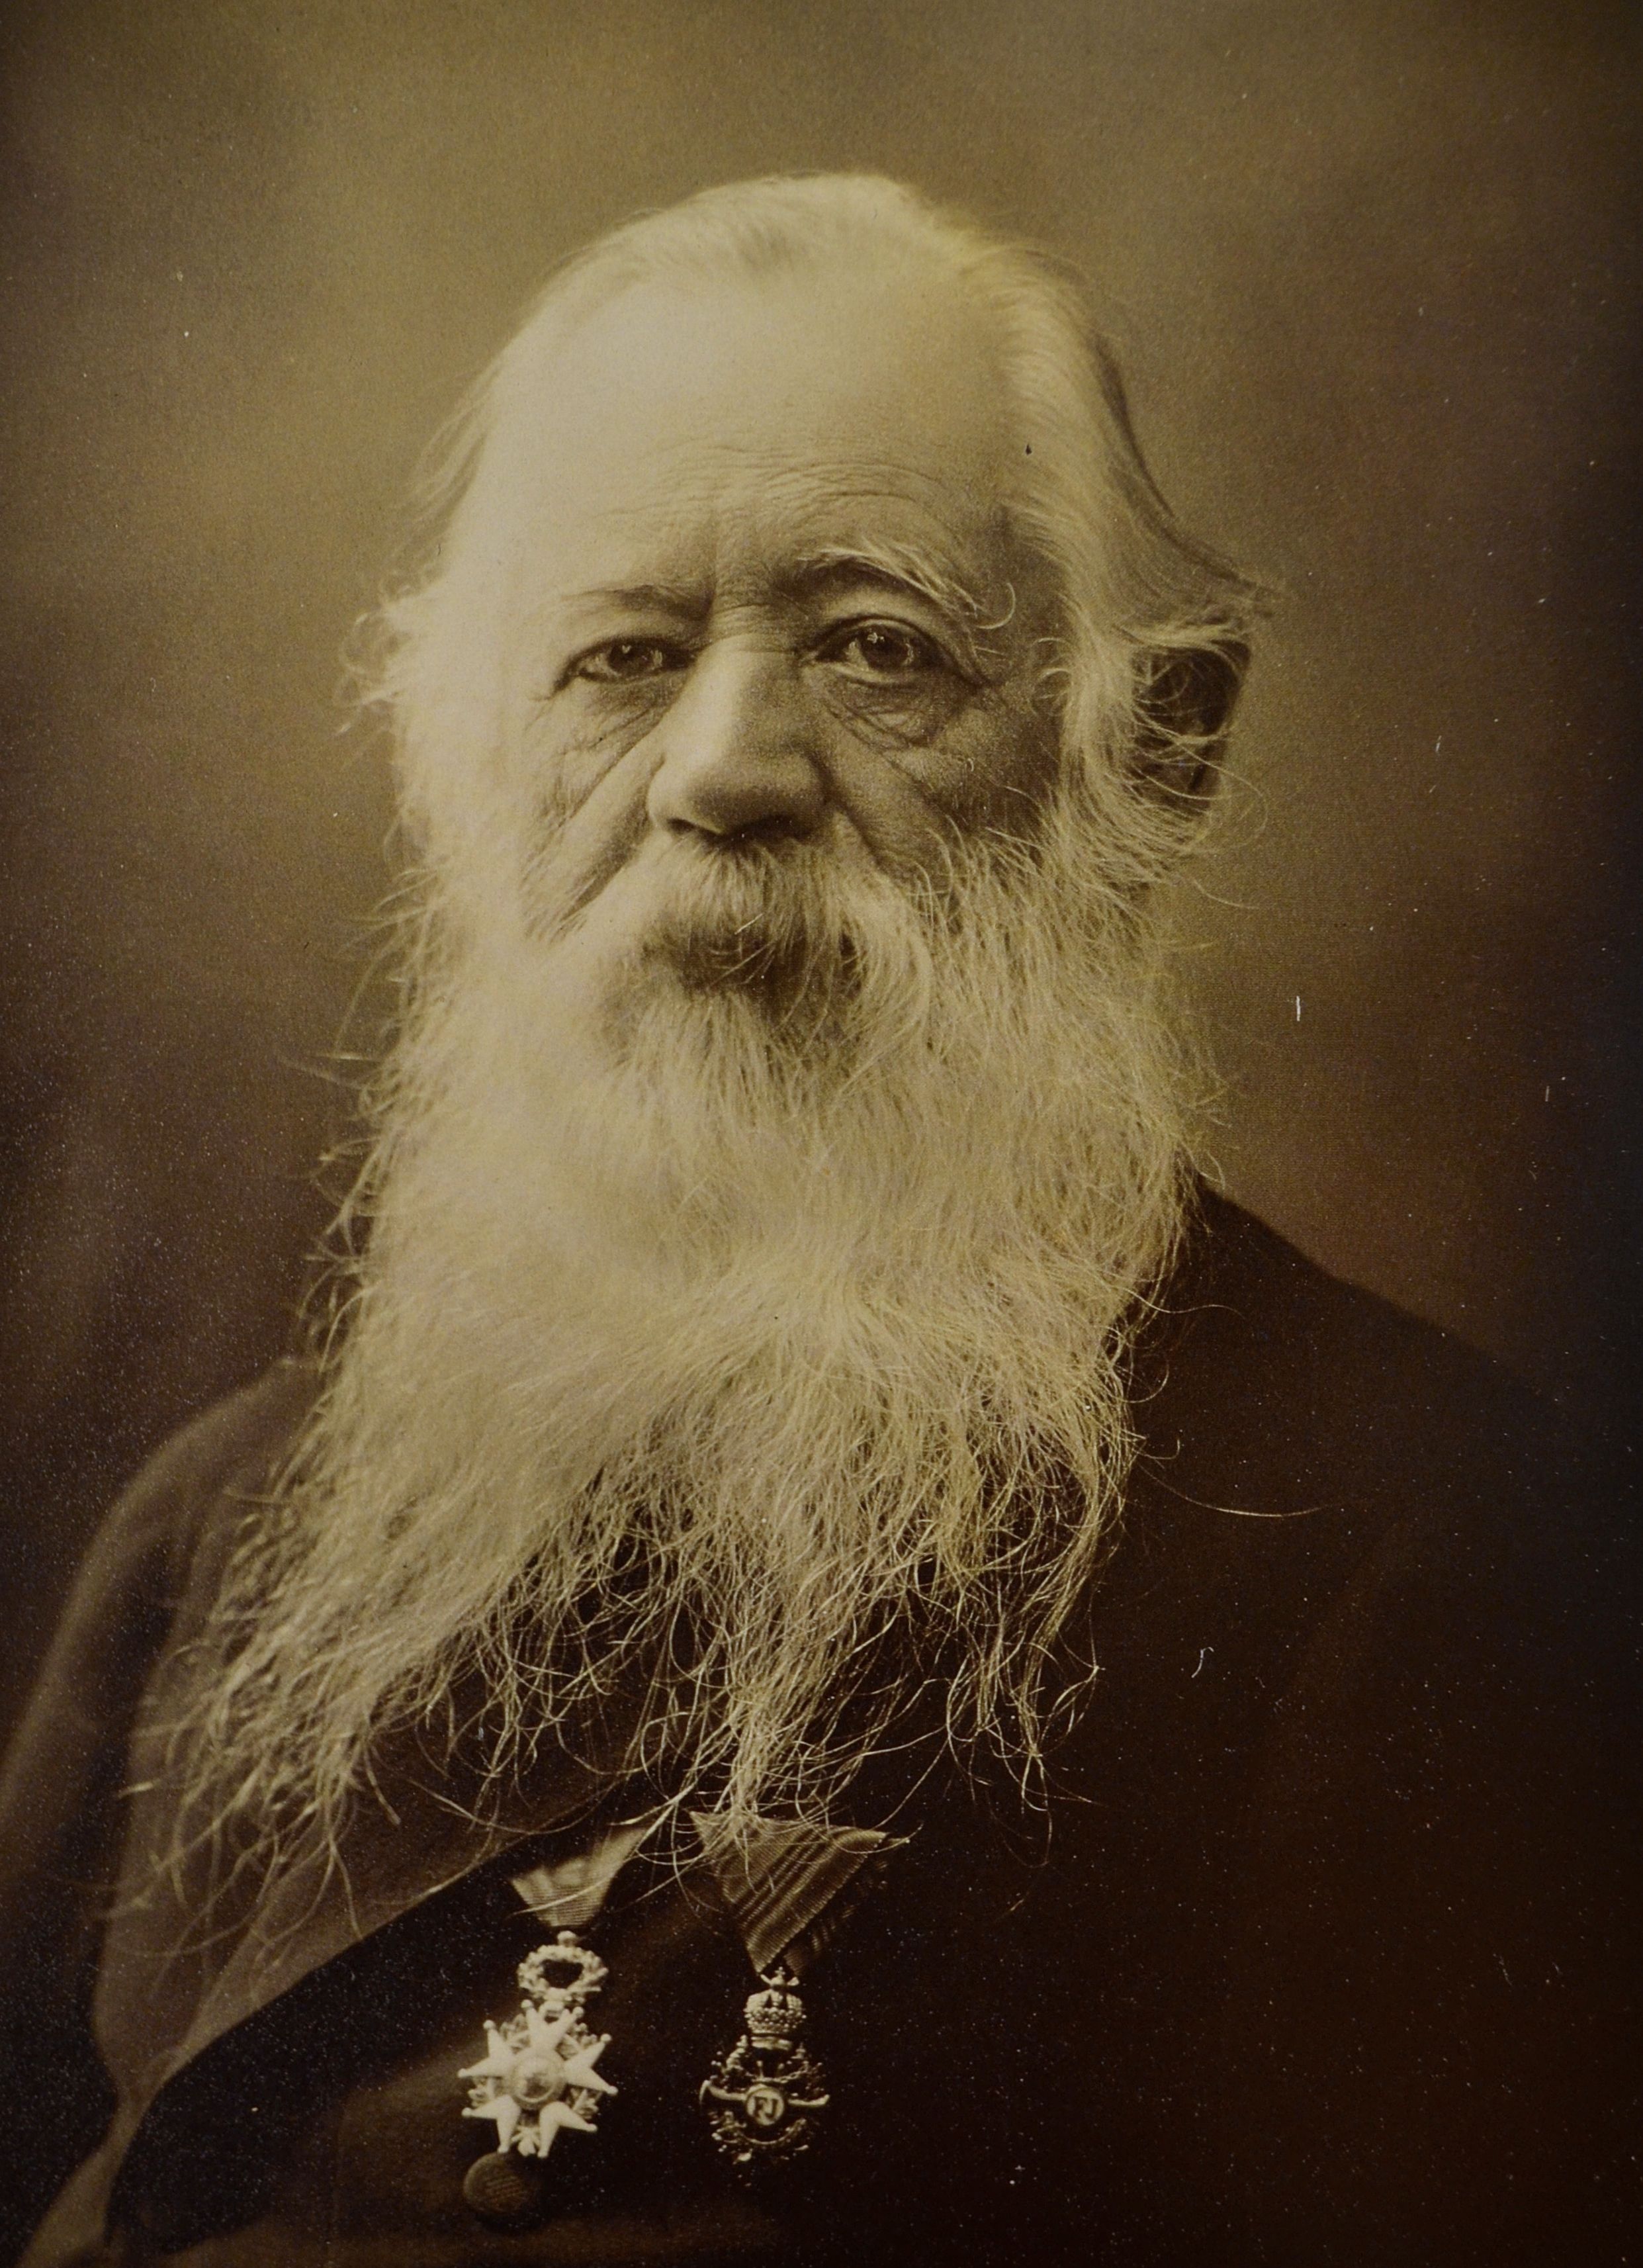 José María Velasco - 6 juillet 1840 - 26 août 1912